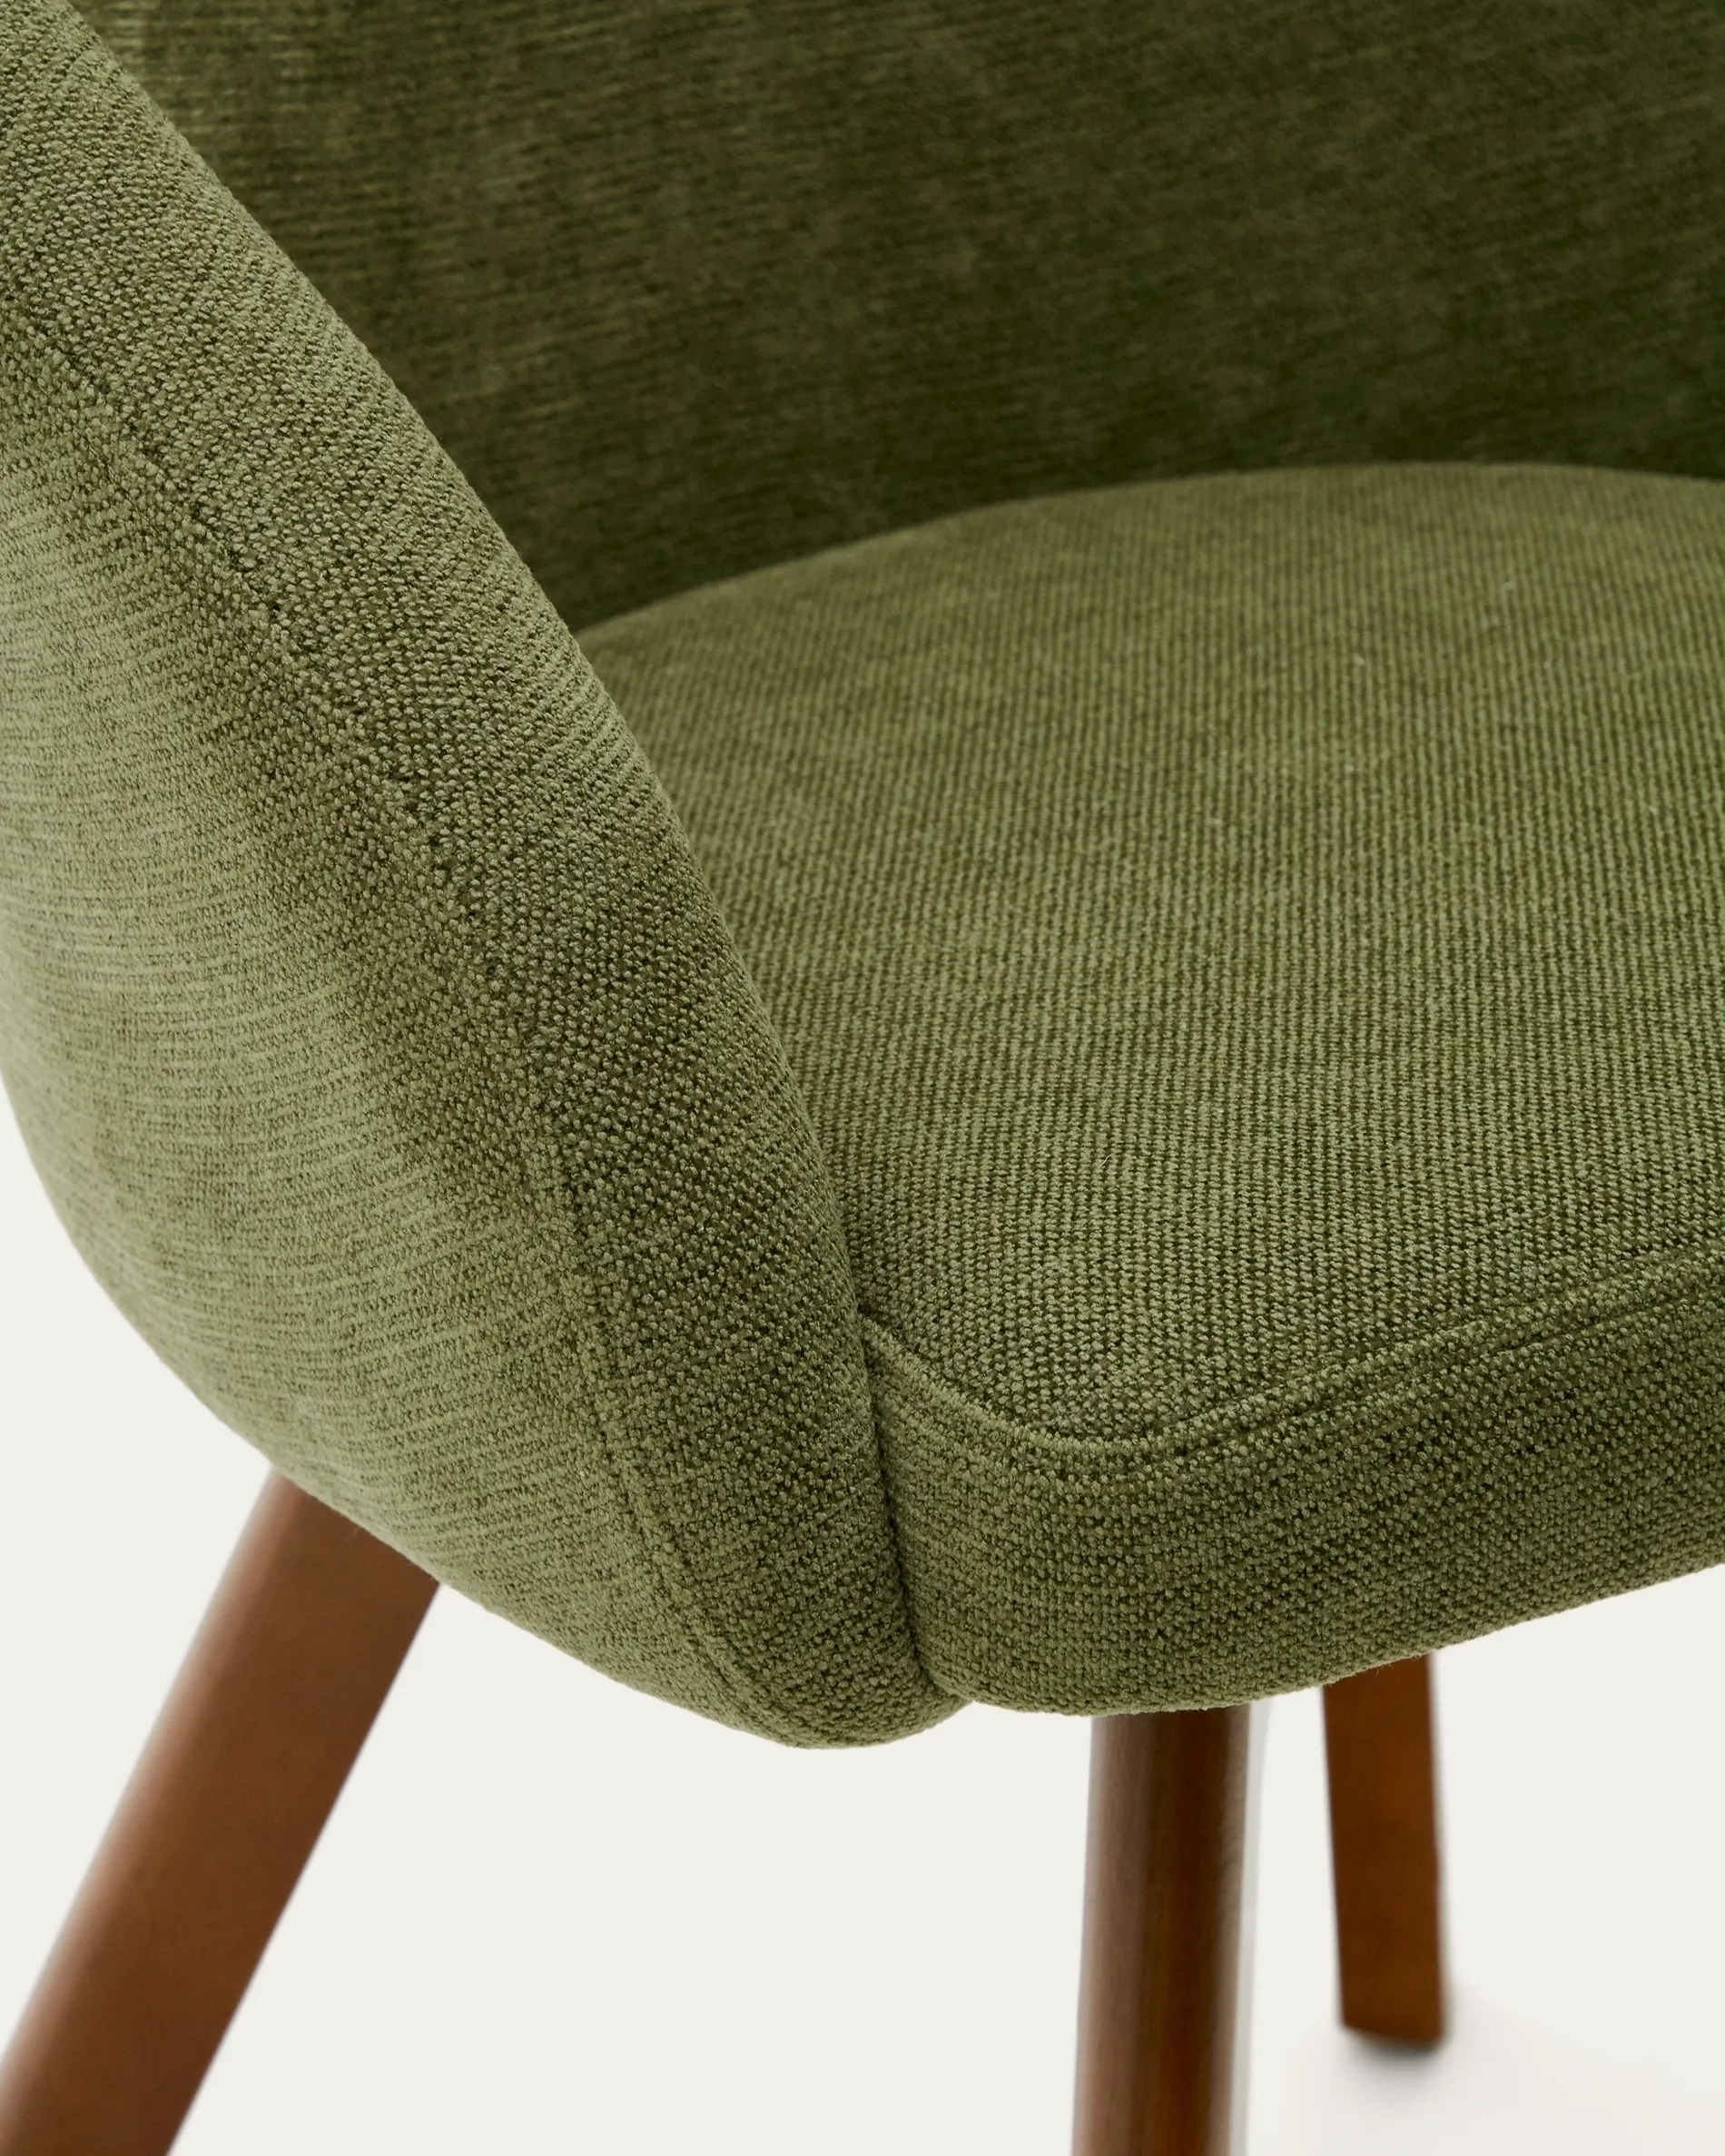 Поворотное кресло La Forma Marvin зеленый шенил ножки из ясеня 181479